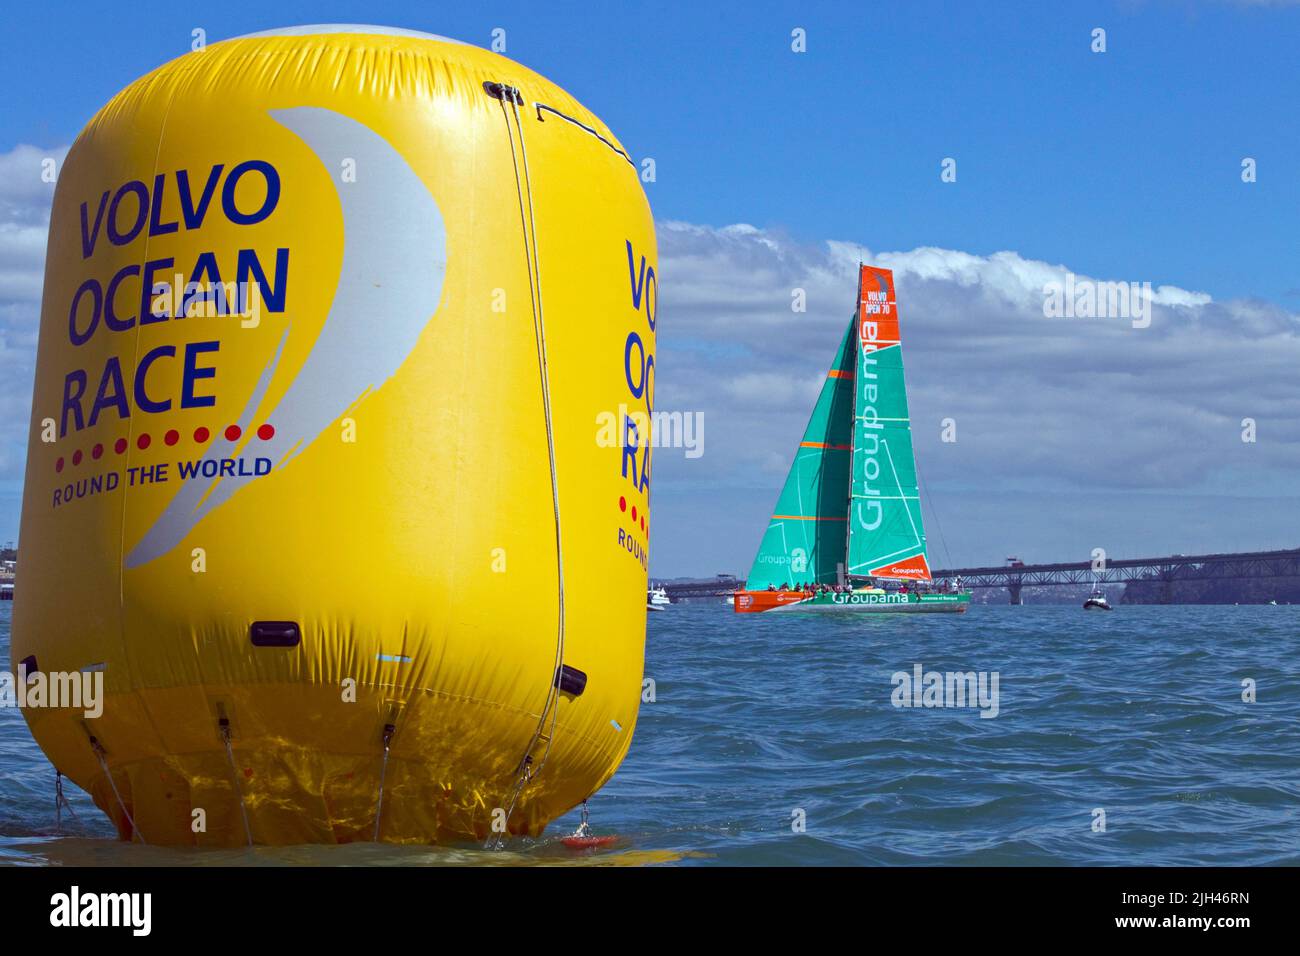 Das Groupama Sailing Team nimmt am Pro-am-Rennen im Rahmen der Hafenaktivitäten des Volvo Ocean Race, Auckland, Neuseeland, Teil. Stockfoto